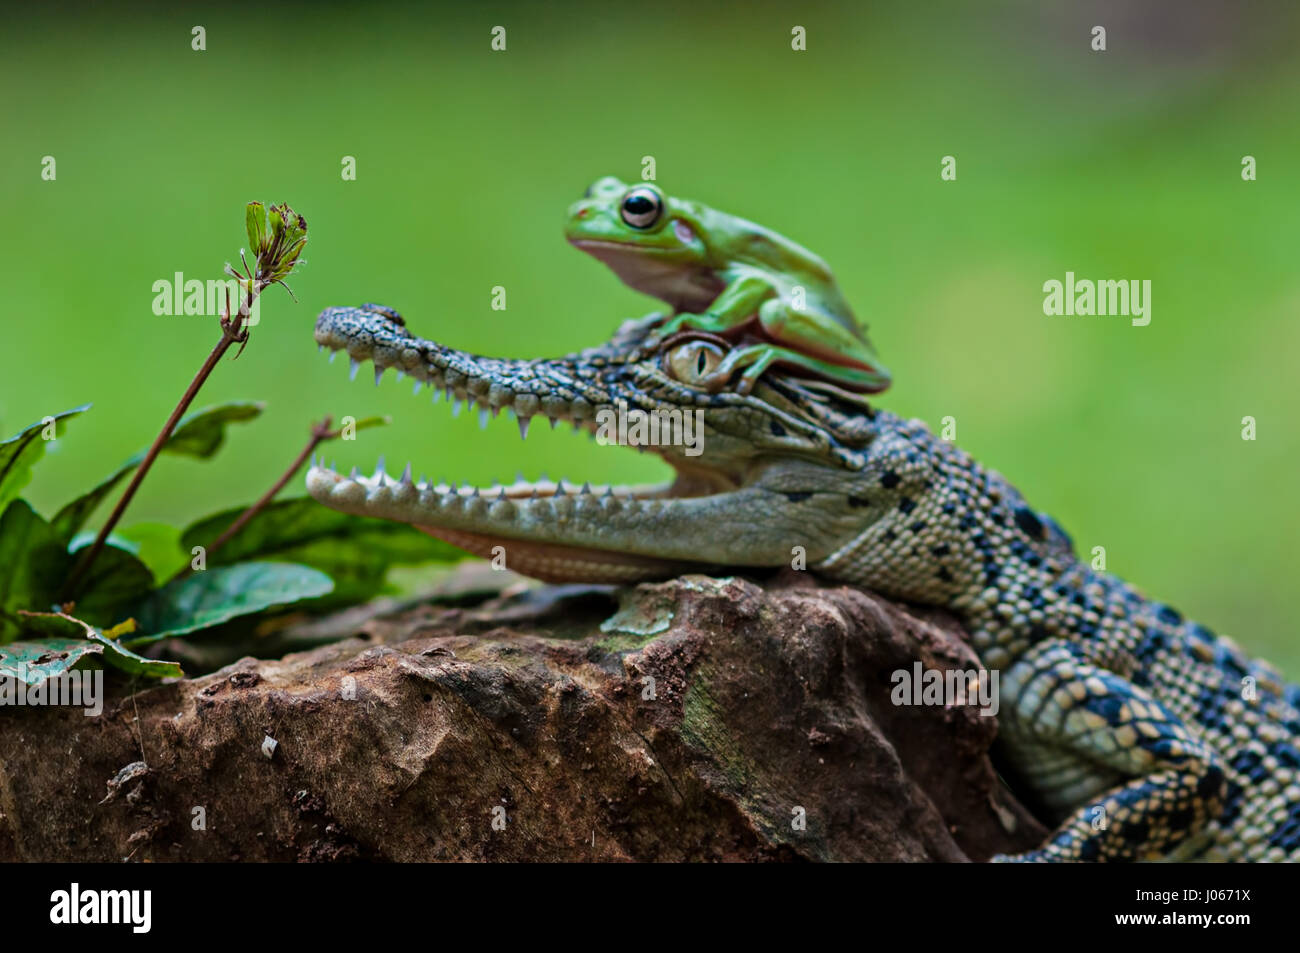 Süd-JAKARTA, Indonesien: Lustige Bilder von einer tapferen Laubfrosch erscheinen offen die Rachen ein Baby Salzwasserkrokodil ziehen wurden von einem Fotografen eingefangen. Die lustige Bilder zeigen die unwahrscheinlich Pals entspannende zusammen auf einem Baumstumpf, wie der Frosch verwandelt sich vor dem Krokodil Kopf auf vor posiert neben das Reptil offenen Mund. Ein anderes Bild zeigt, wie die rastlose Amphibien auf dem Krokodilkopf kletterten. Die urkomischen Aufnahmen wurden von Roni Kurniawan (26) in Süd-Jakarta, Indonesien. Roni verwendet eine Canon 600D Kamera, die überraschende Begegnung zu erfassen. Roni Kurniawan / Mediadr Stockfoto